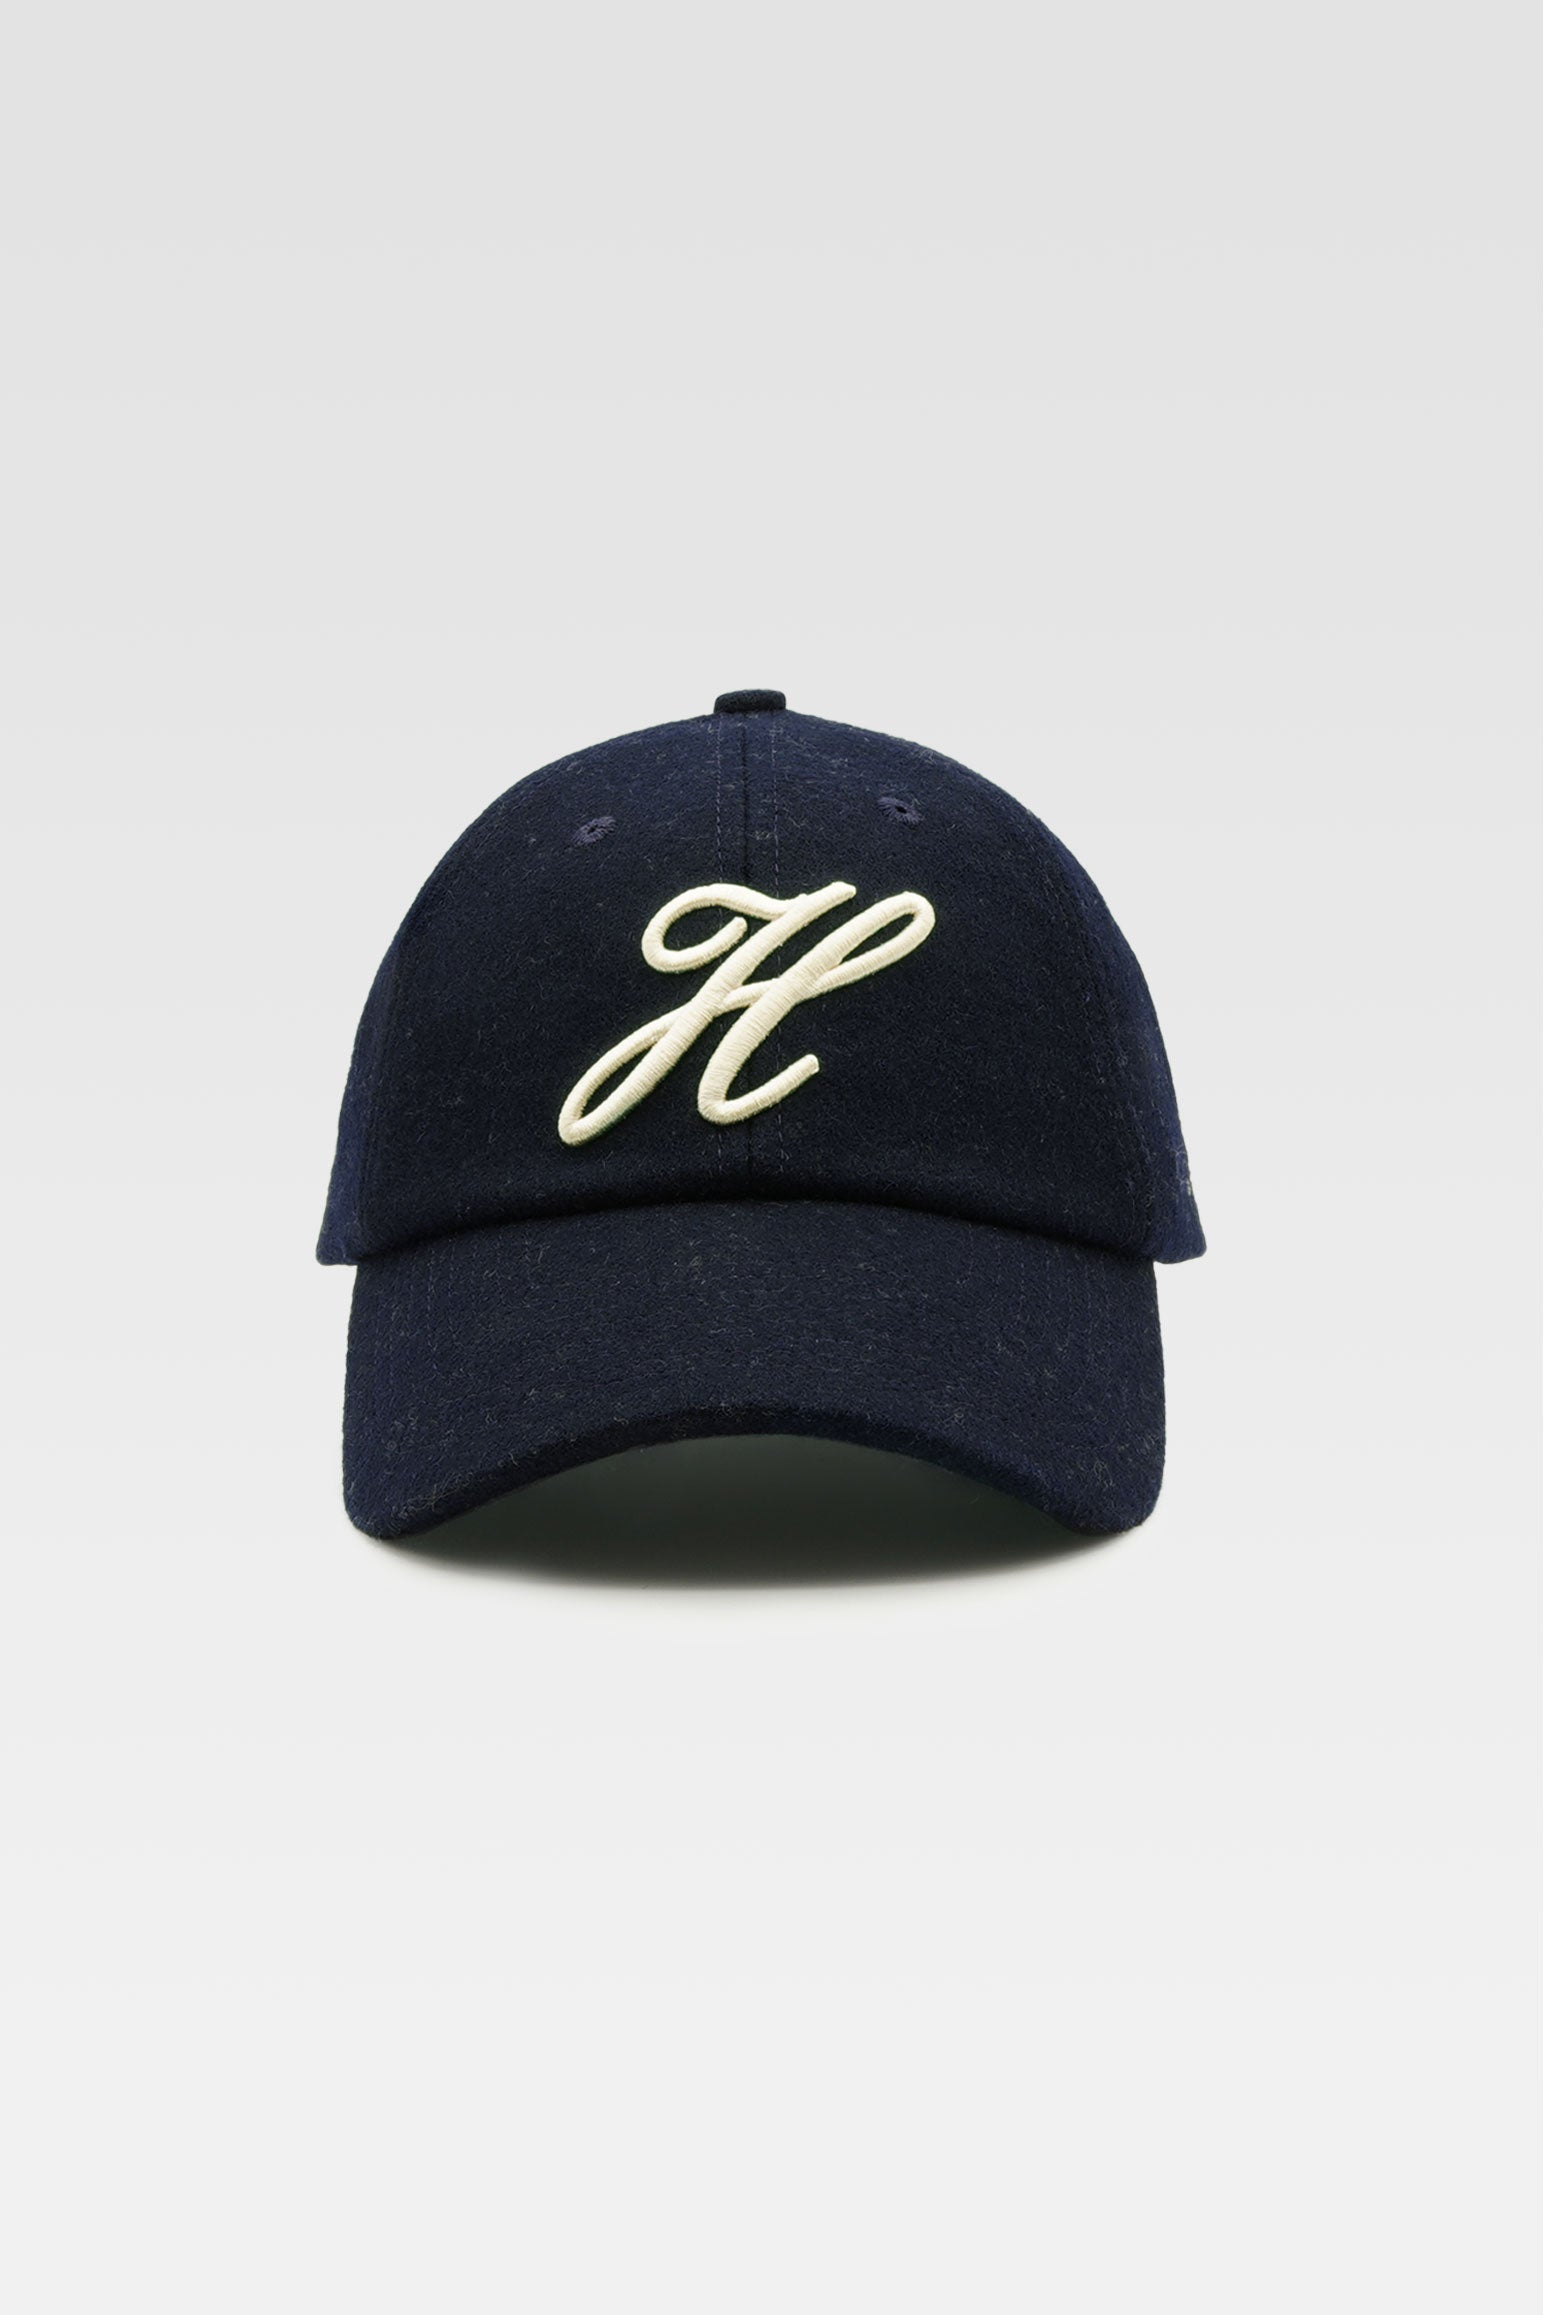 Navy Varsity-Style Baseball Cap – Harmony Paris